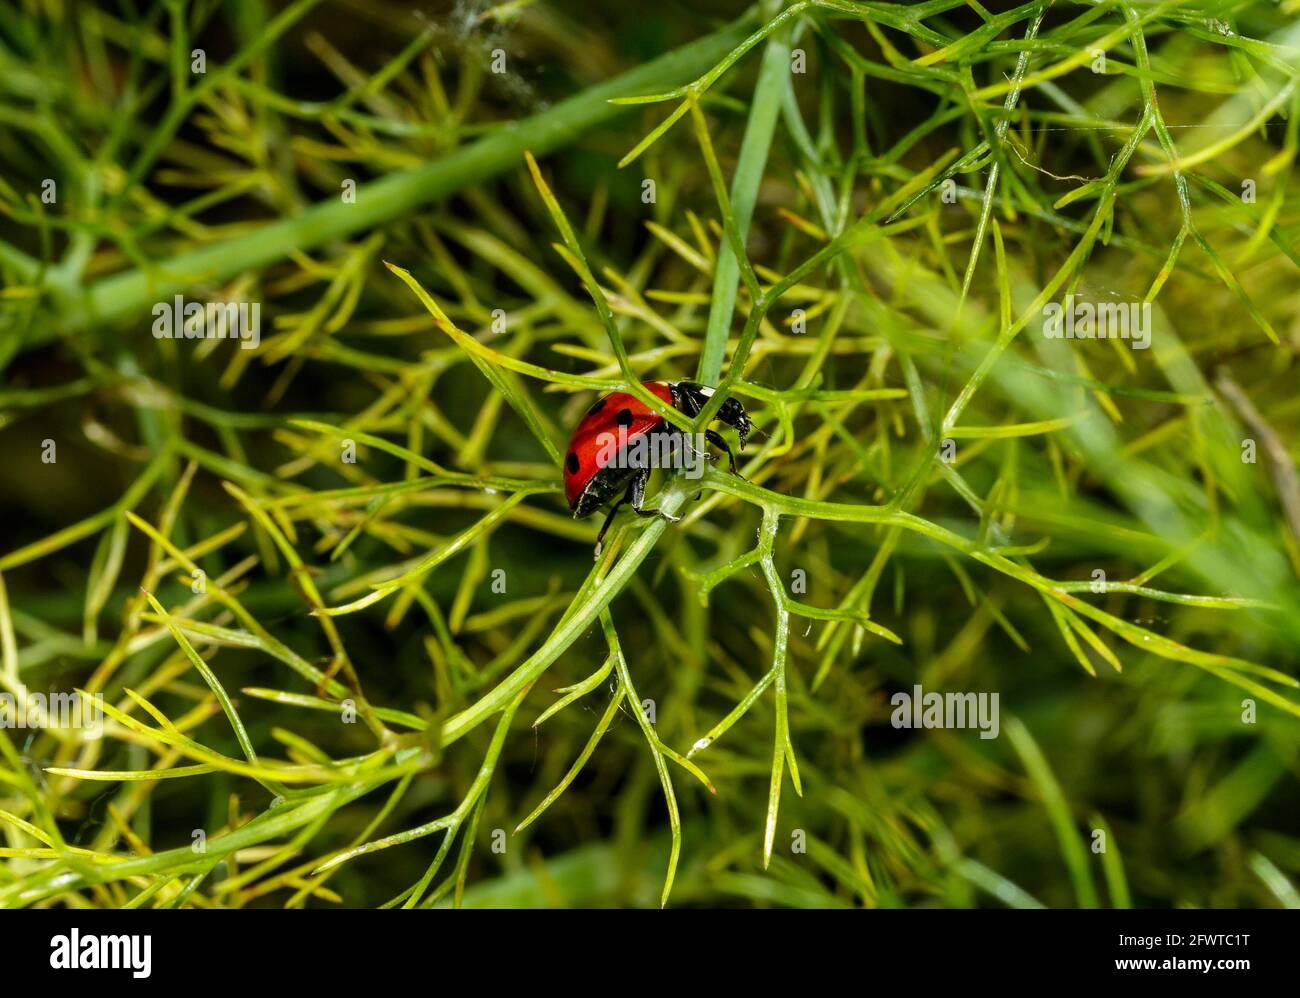 A ladybug walking Stock Photo